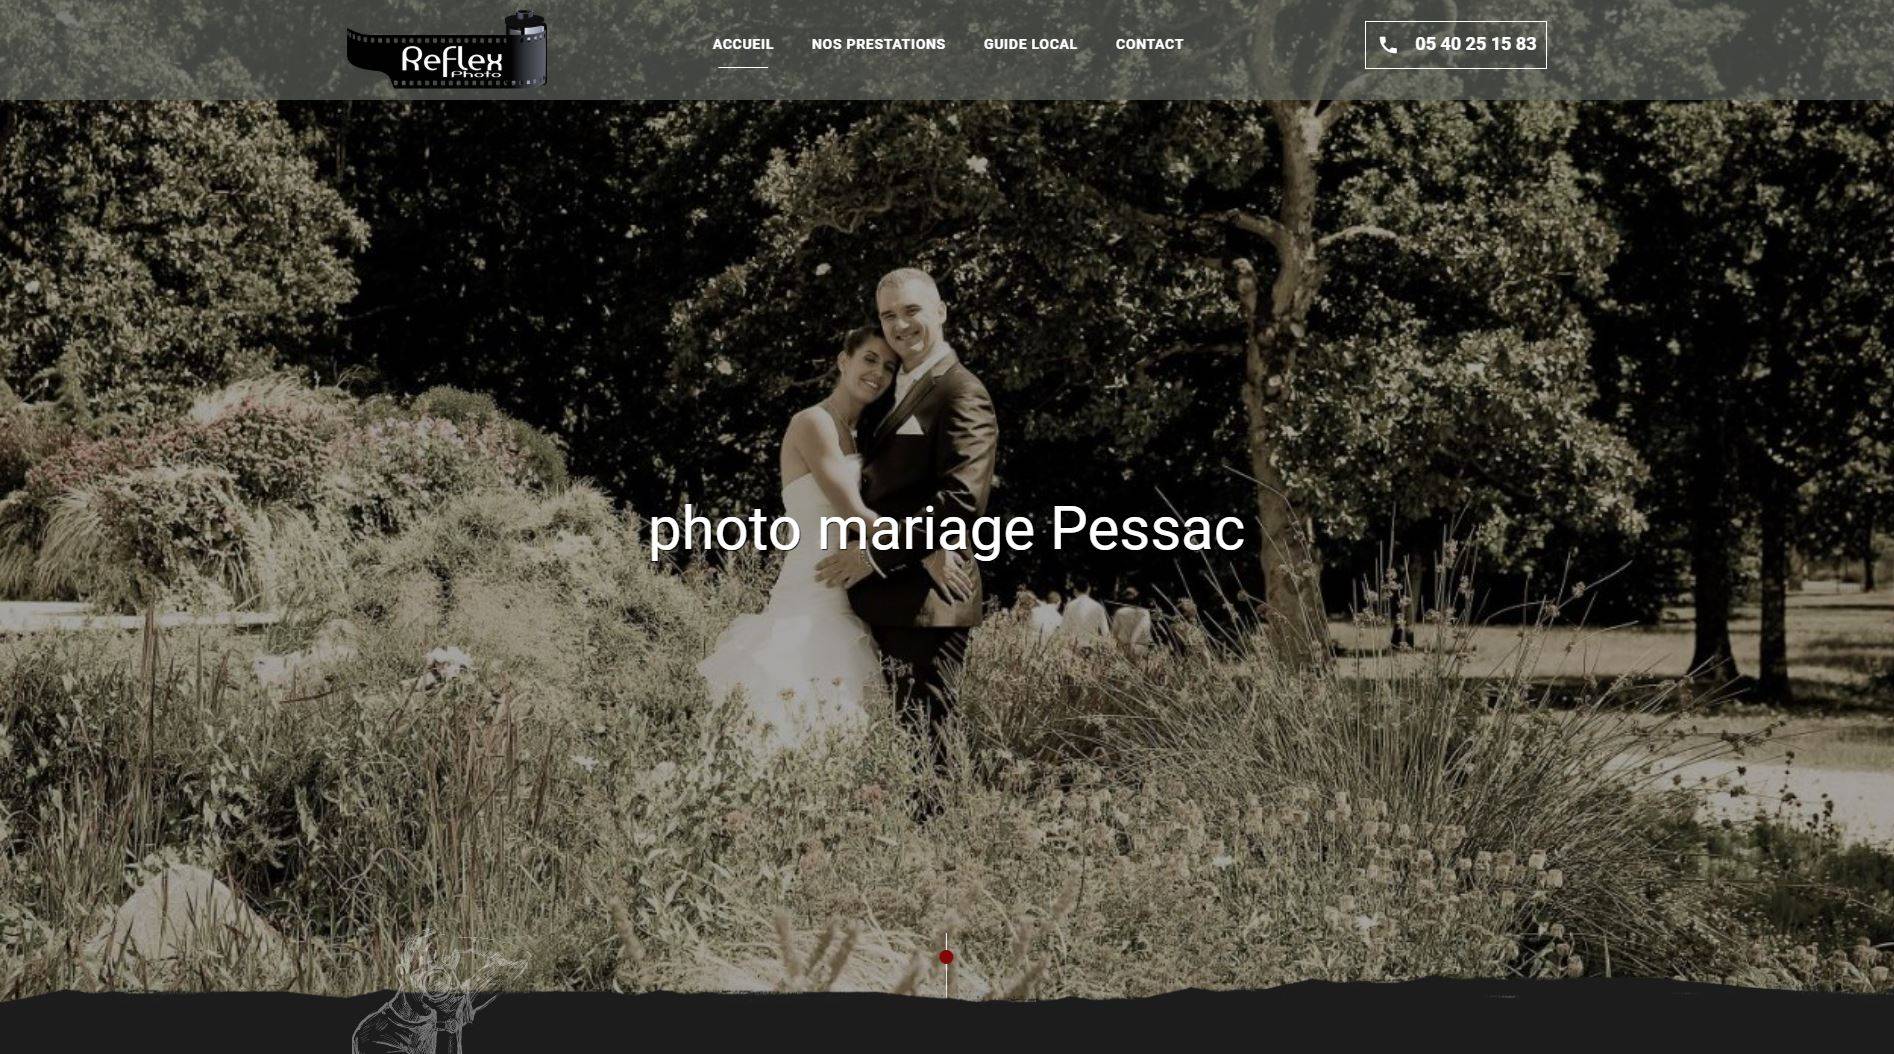 Trouver un photographe professionnel pour des photo d'identité à Pessac - Reflex Photo